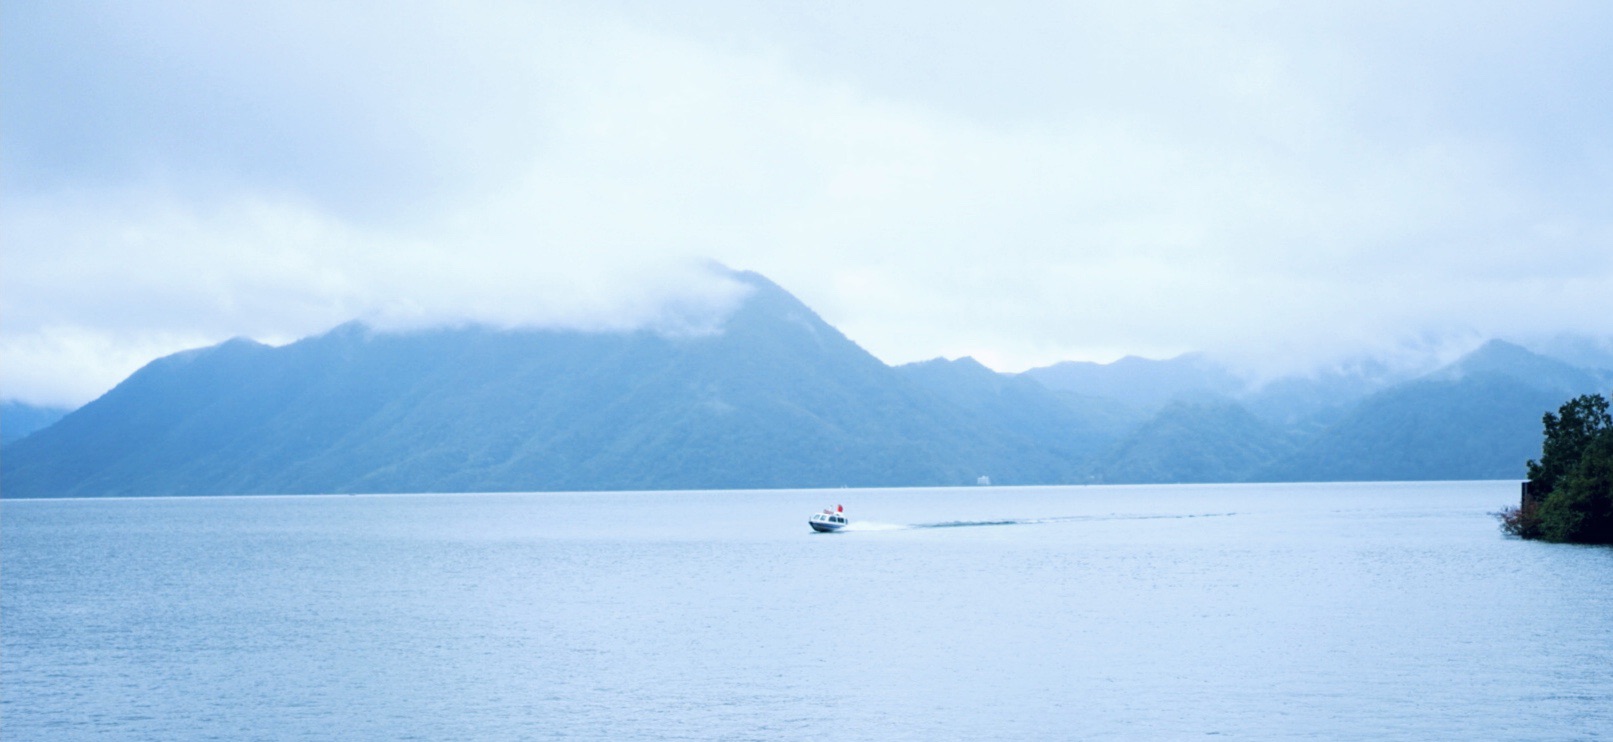 青山绿水游轮一黄山太平湖体验自然风光